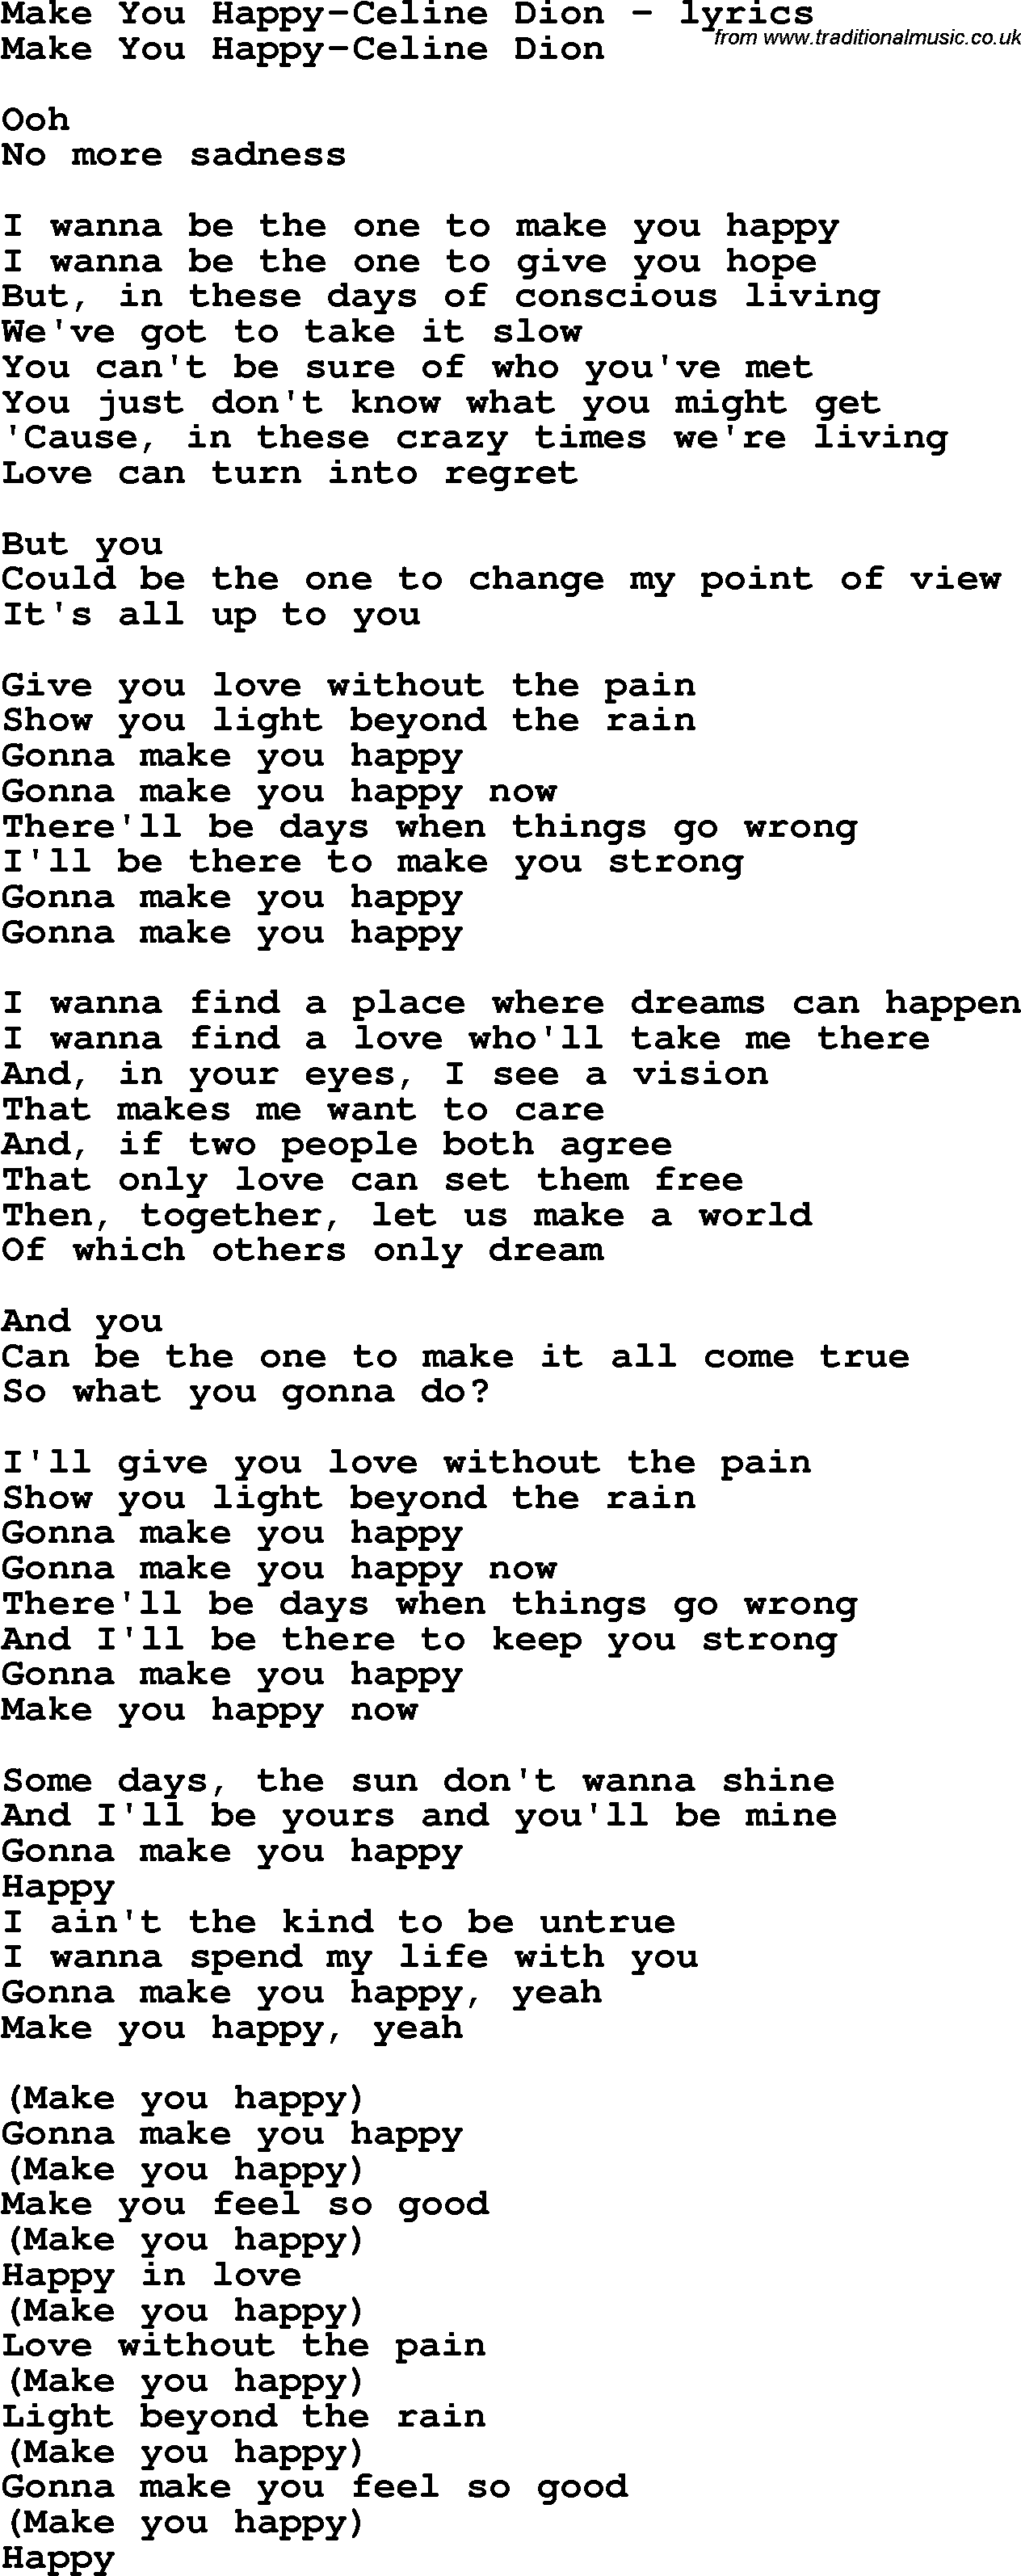 Love Song Lyrics for:Make You Happy-Celine Dion